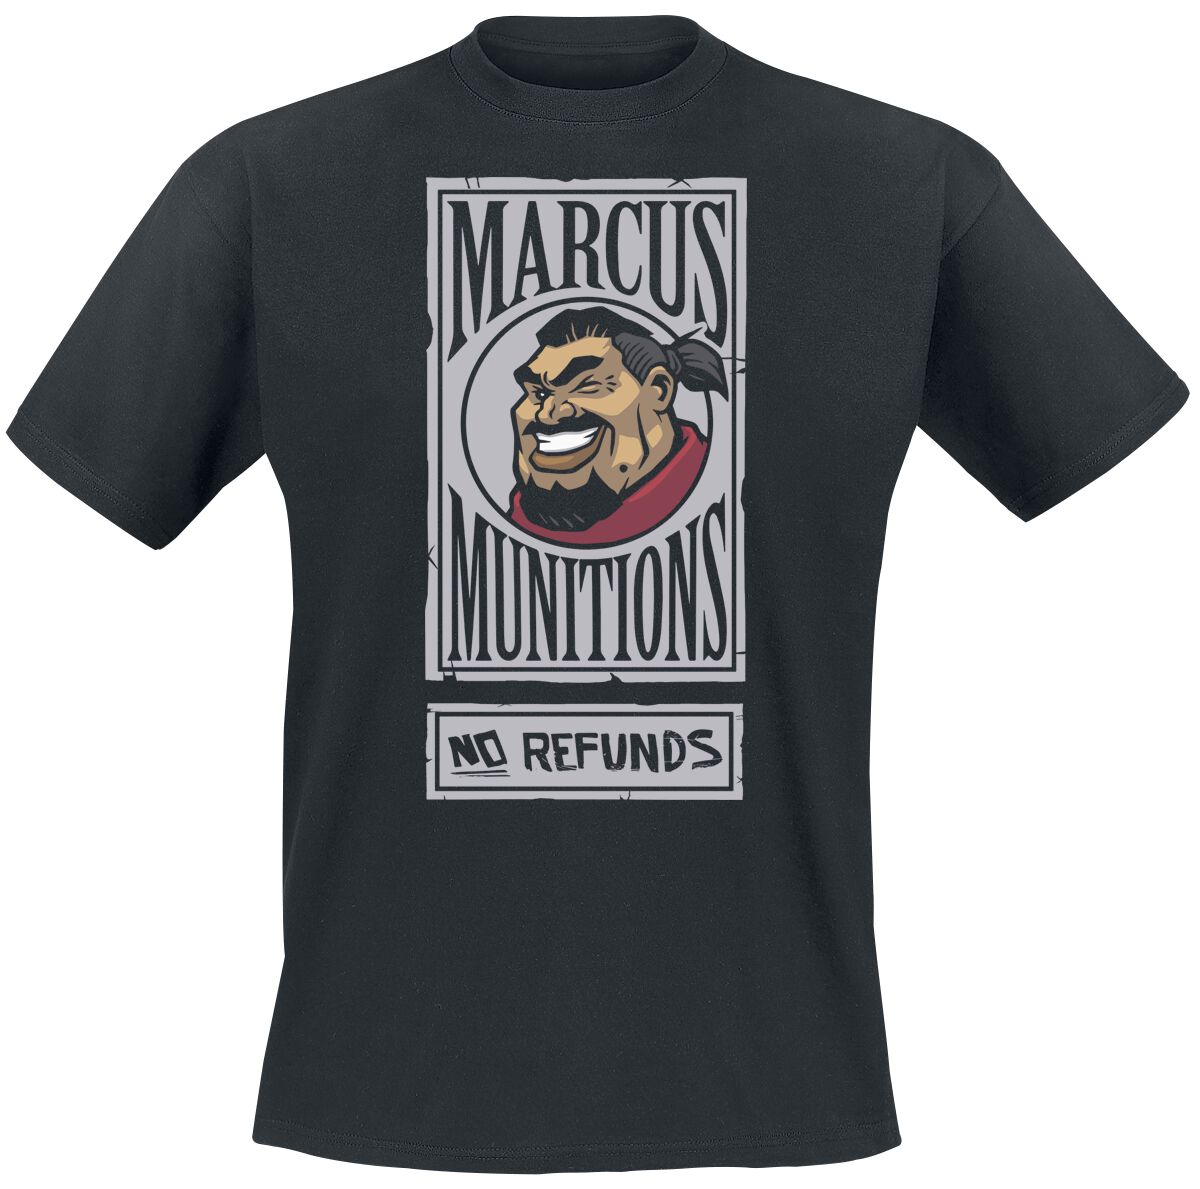 Borderlands - Gaming T-Shirt - 3 - Marcus Munitions - S bis XL - für Männer - Größe L - schwarz  - EMP exklusives Merchandise! von Borderlands